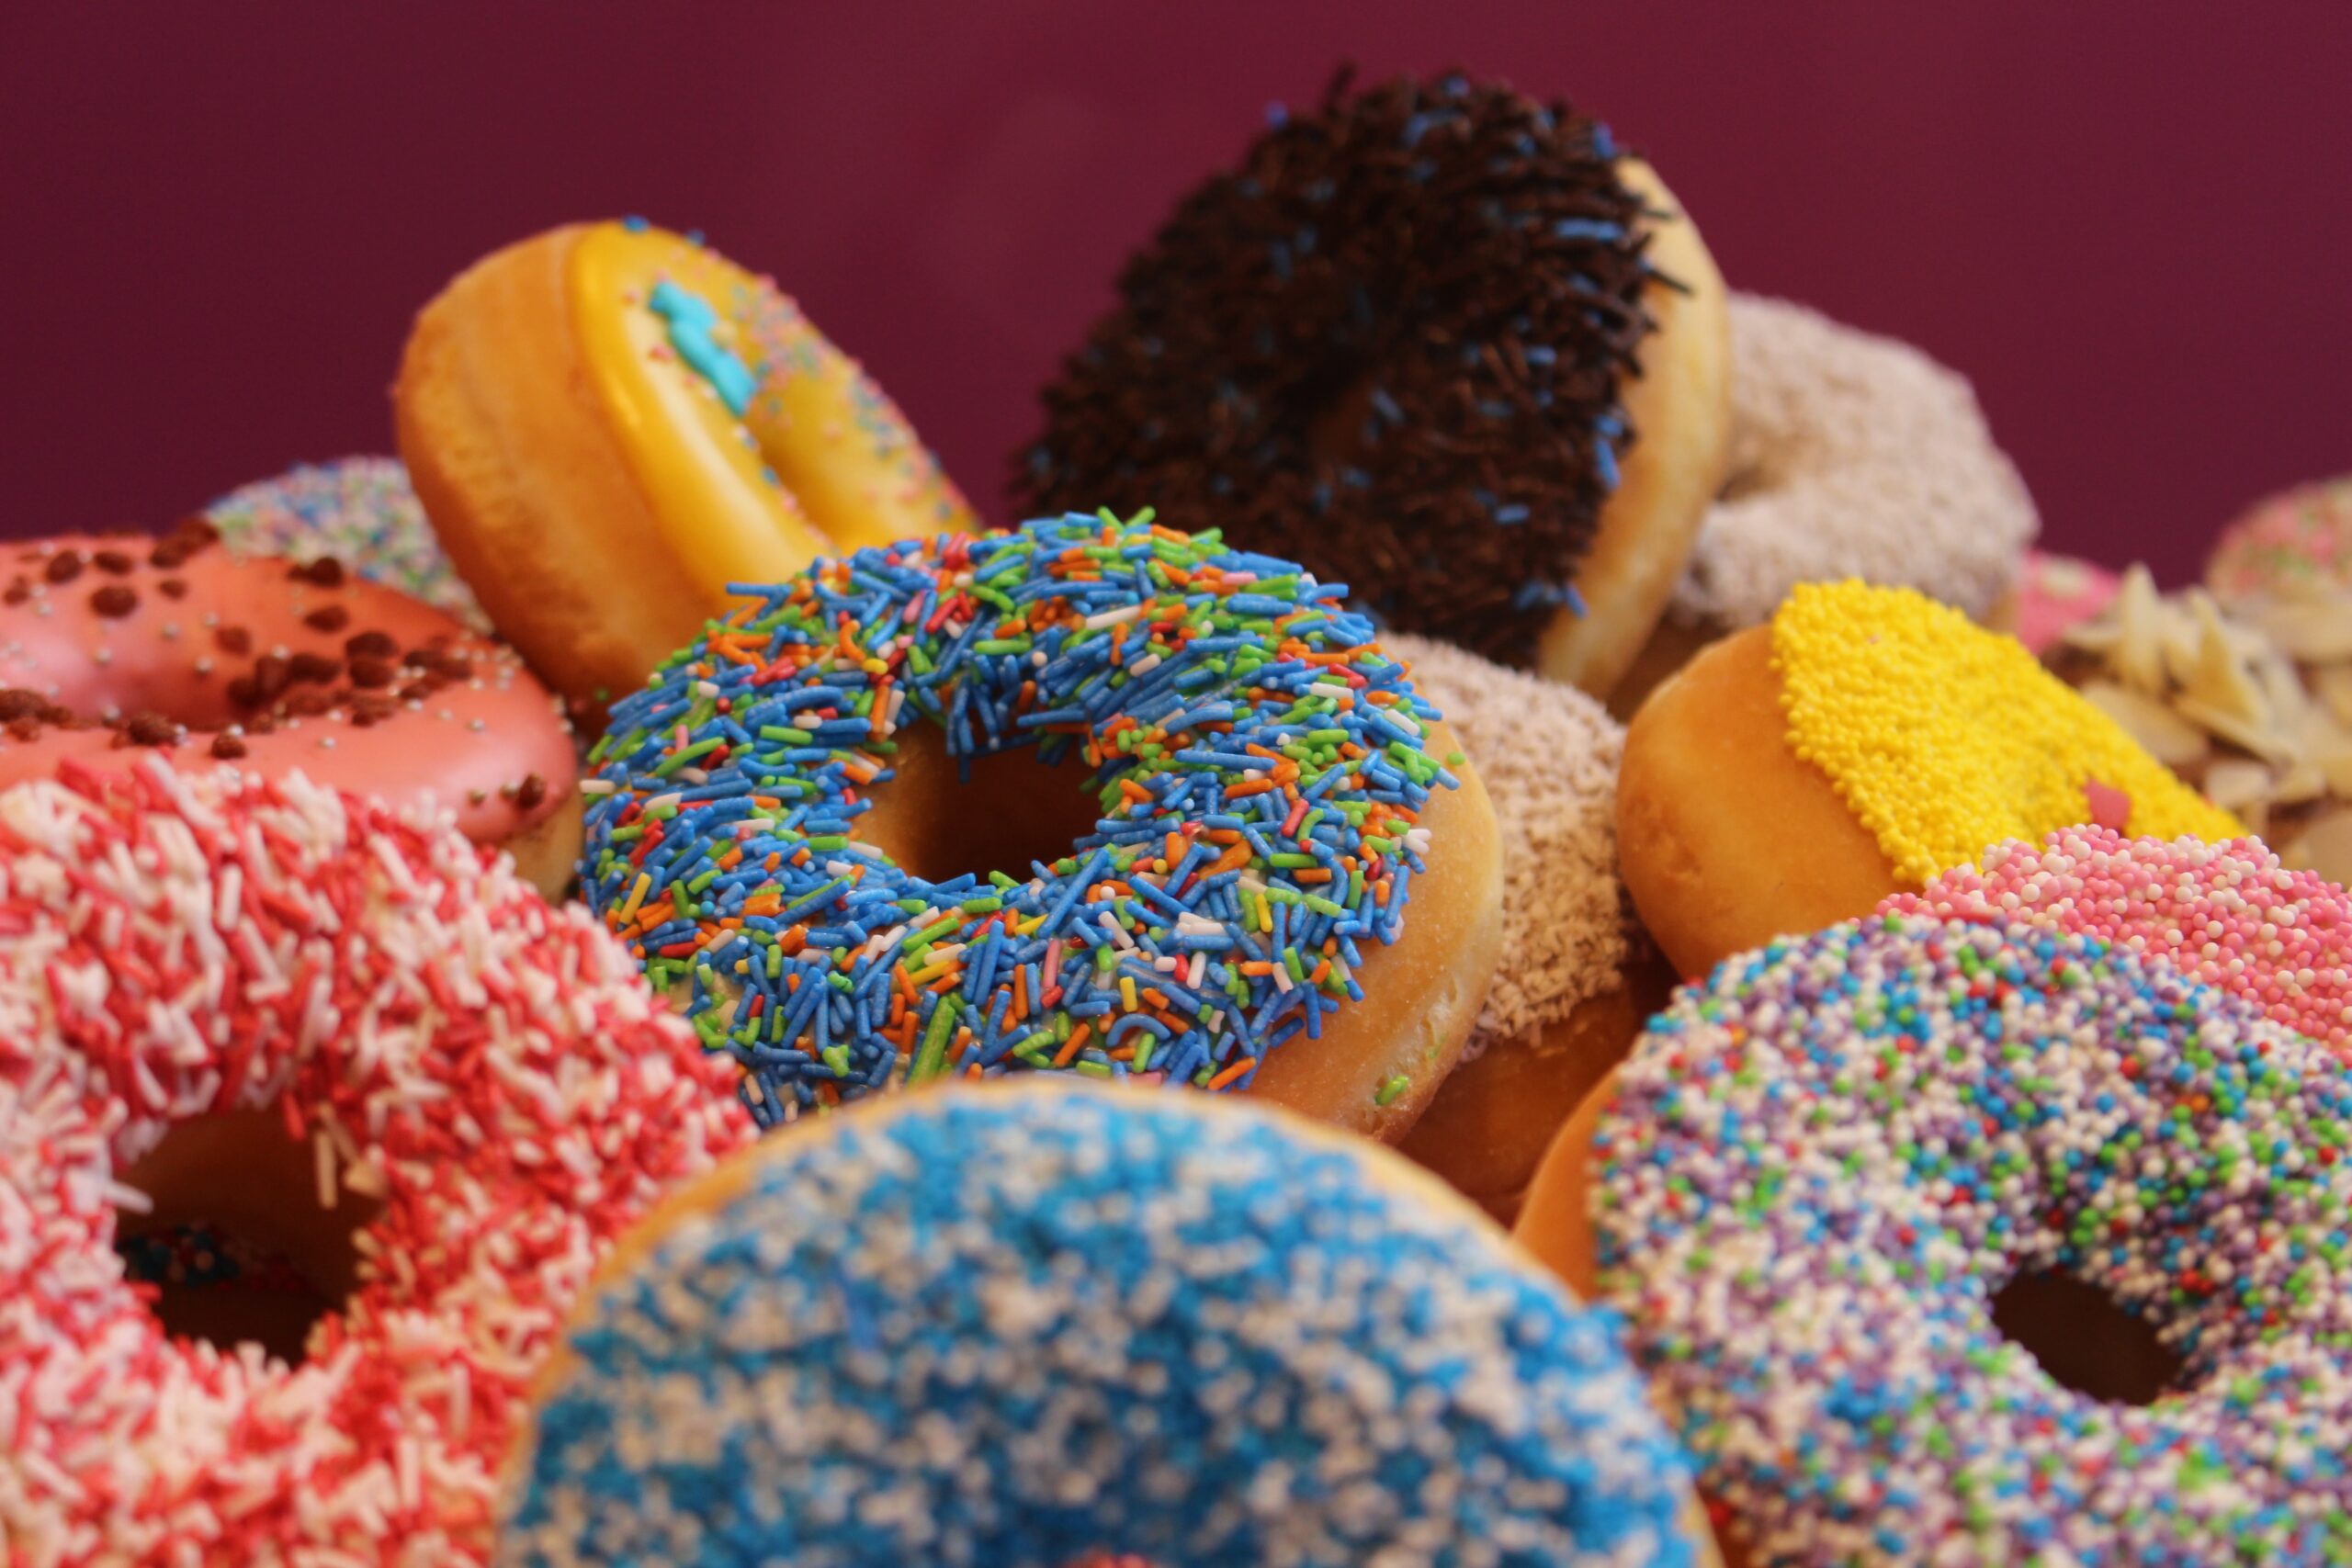 Poradnik psychodietetyka – Jak uwolnić się od uzależnienia od słodyczy?